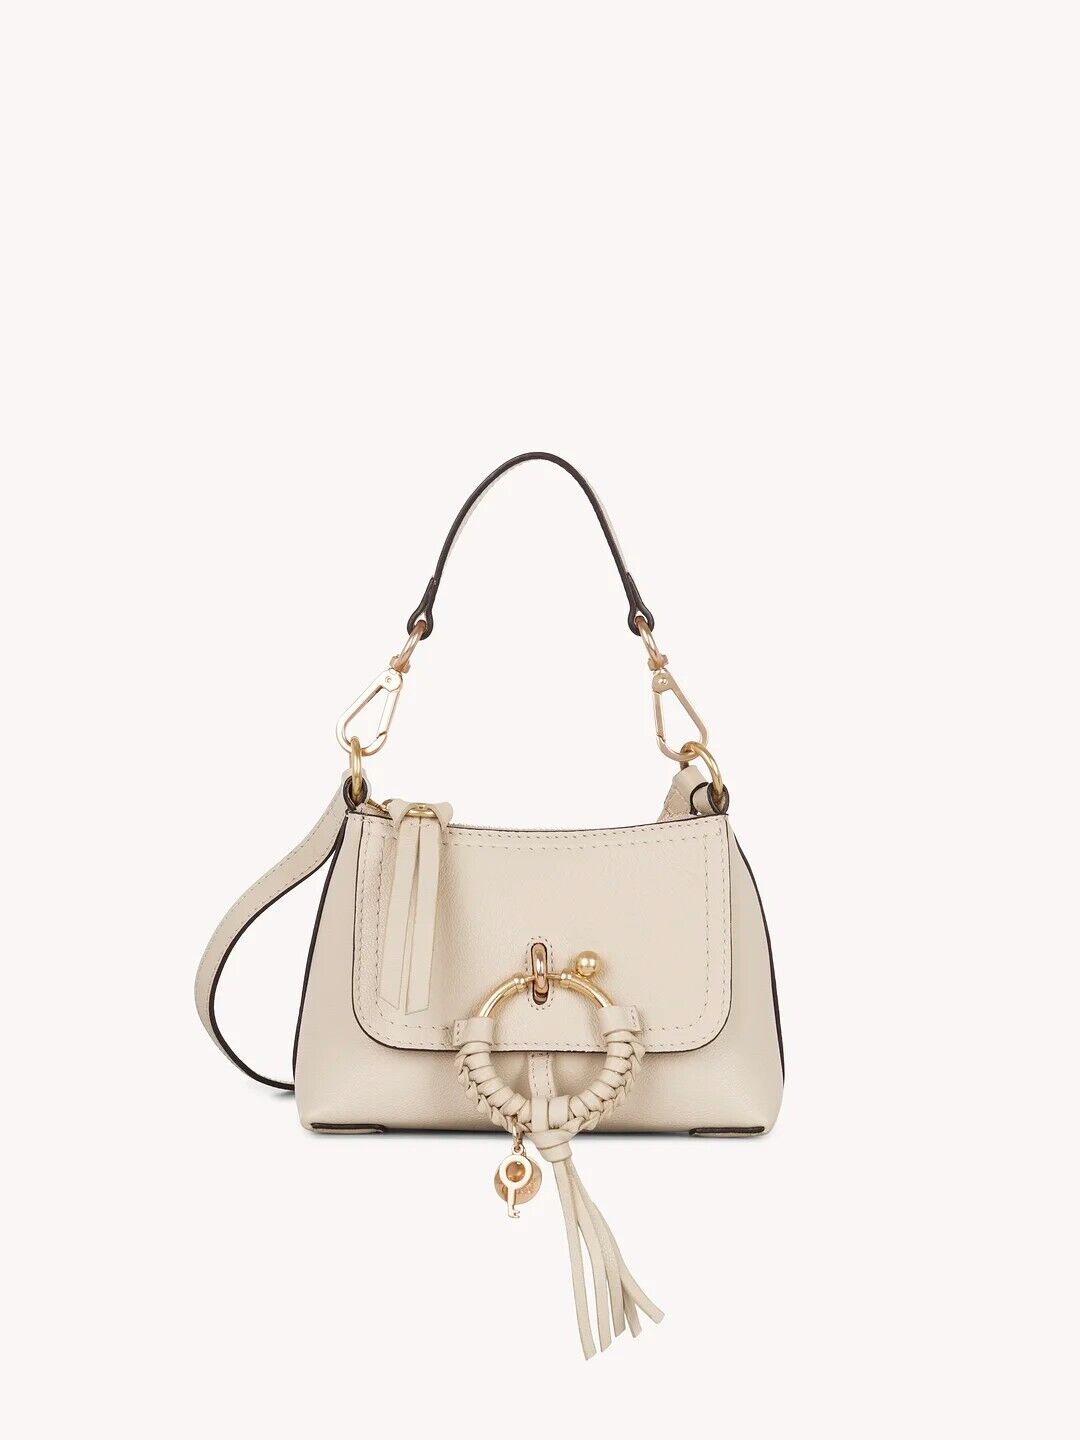 Chloe bag See mini Joan crossbody bag,  Mott Gray New retails 440.00  Beautiful